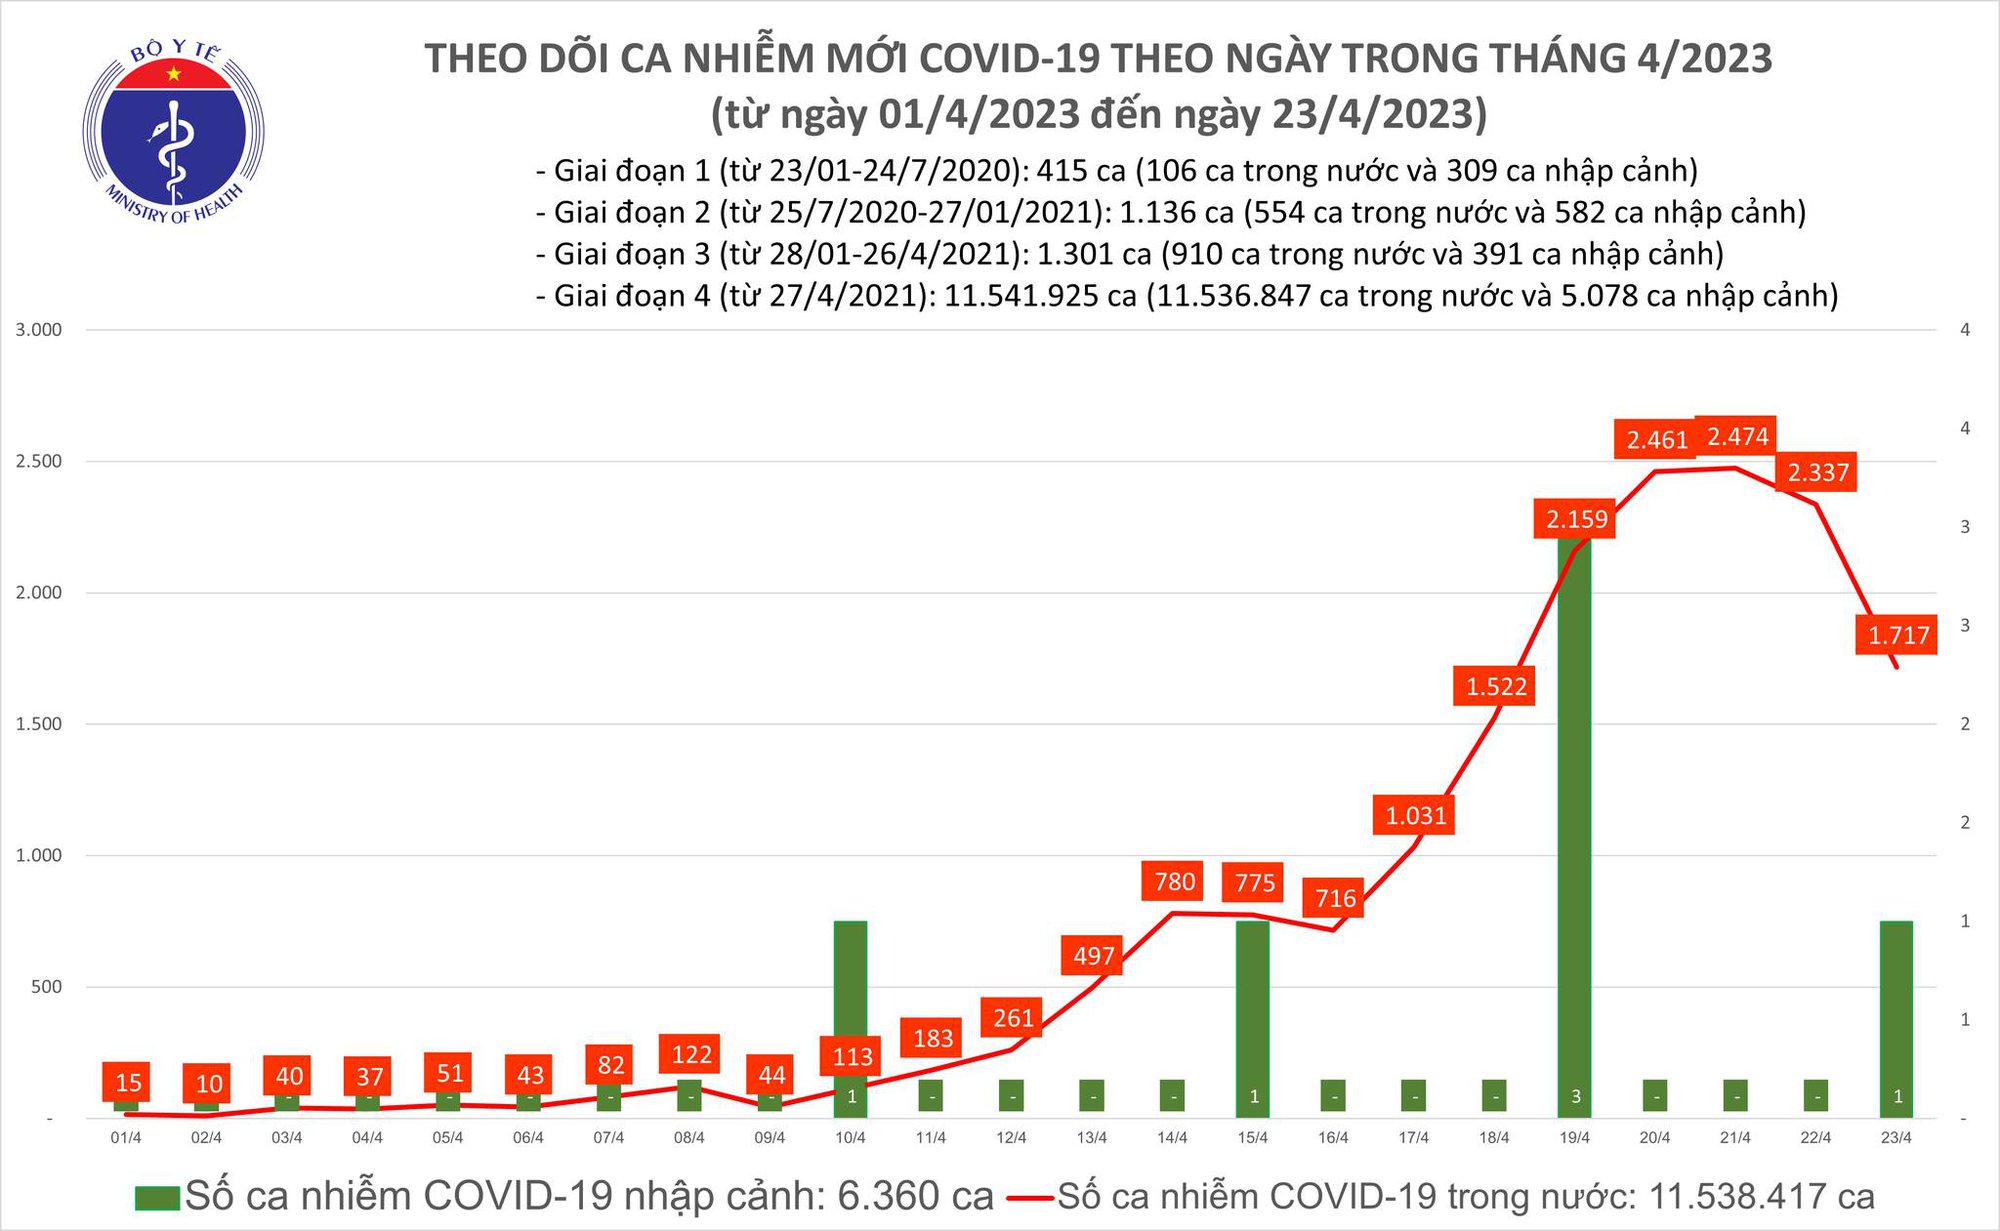 Covid-19 ngày 23/4: Xuất hiện biến thể phụ mới của Omicron tại TP.HCM - Ảnh 1.